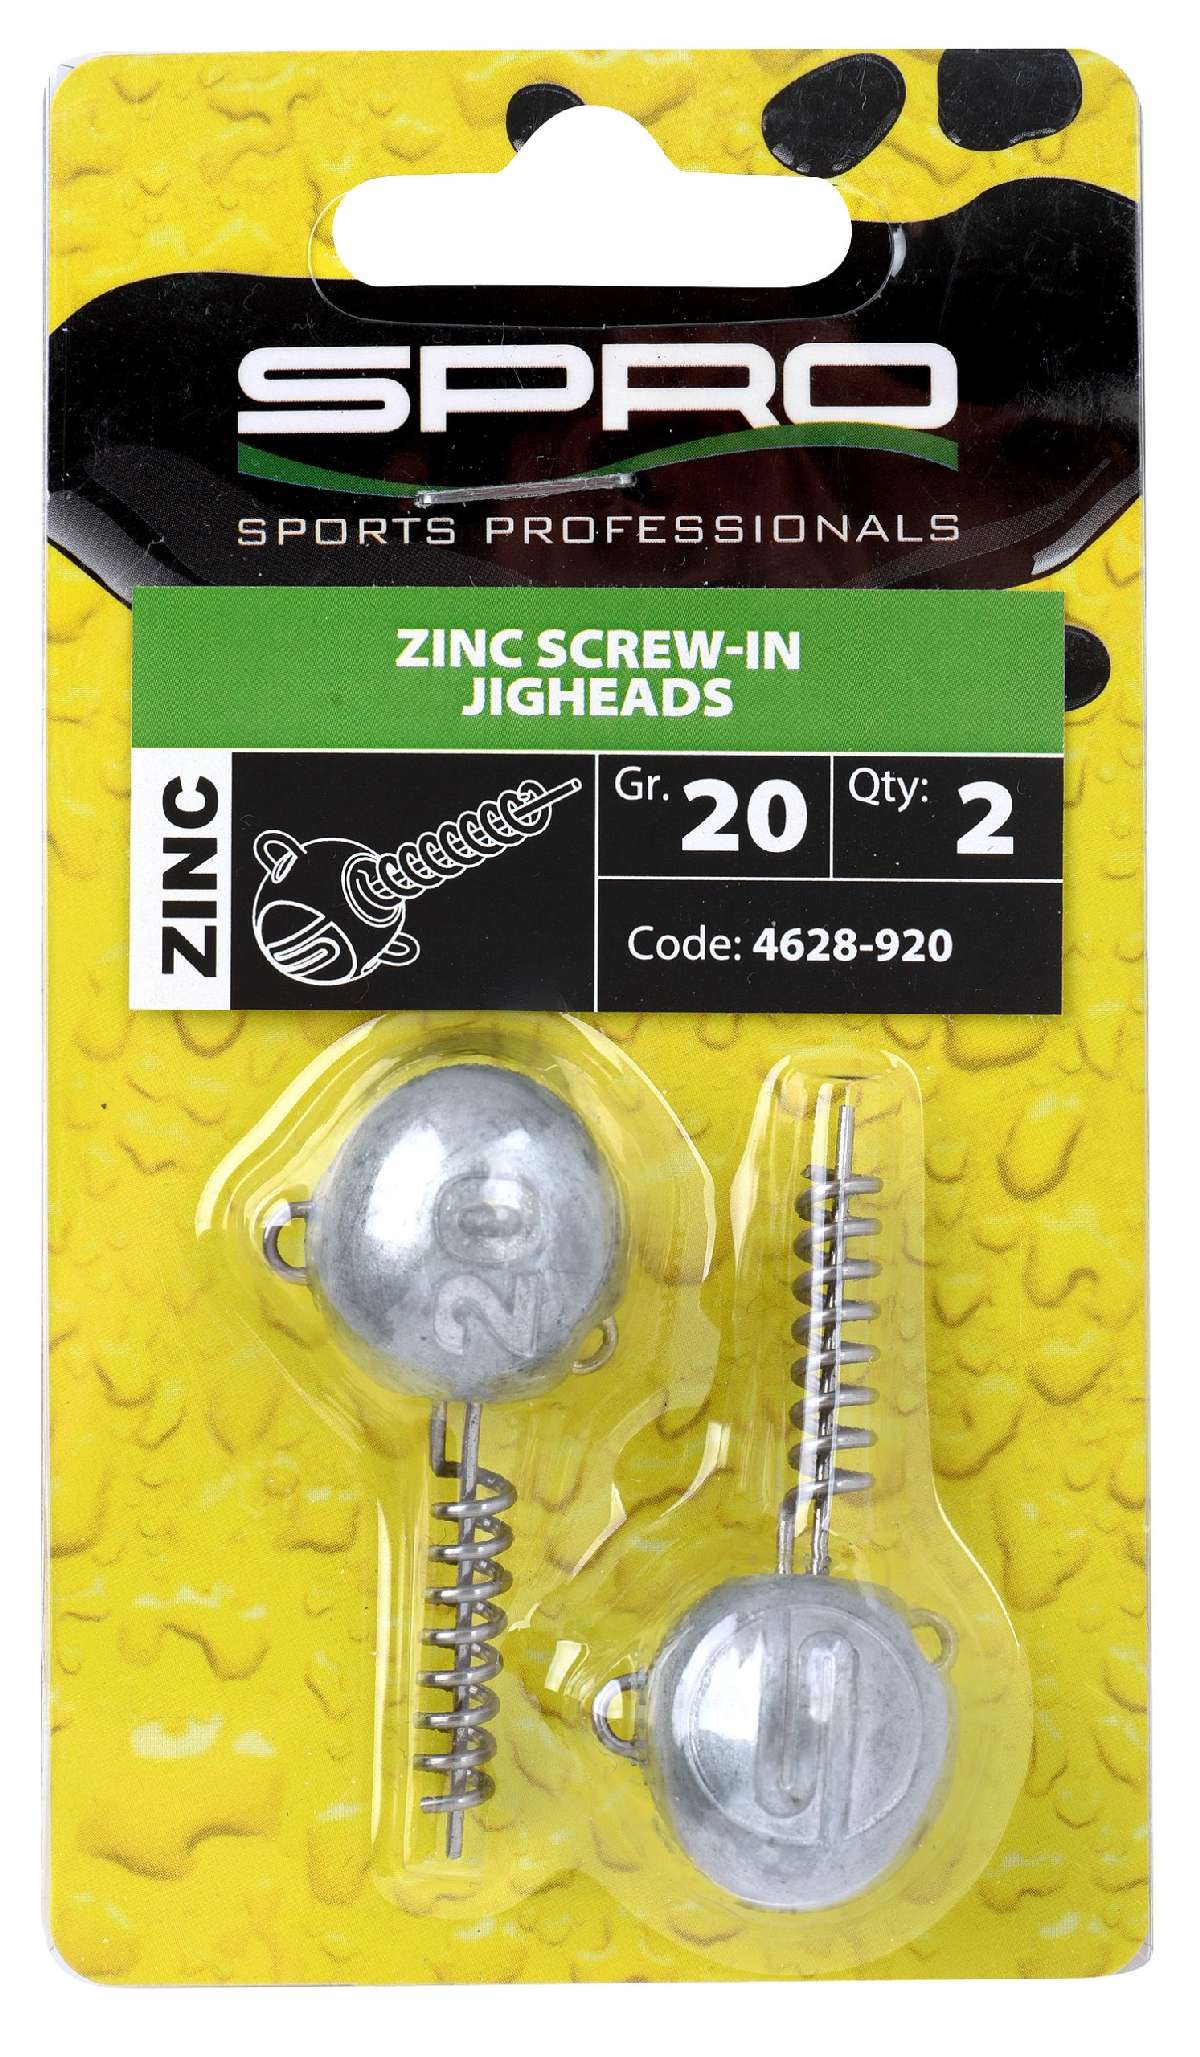 Spro Zinc Screw-In Jigheads 20 gr 2st.